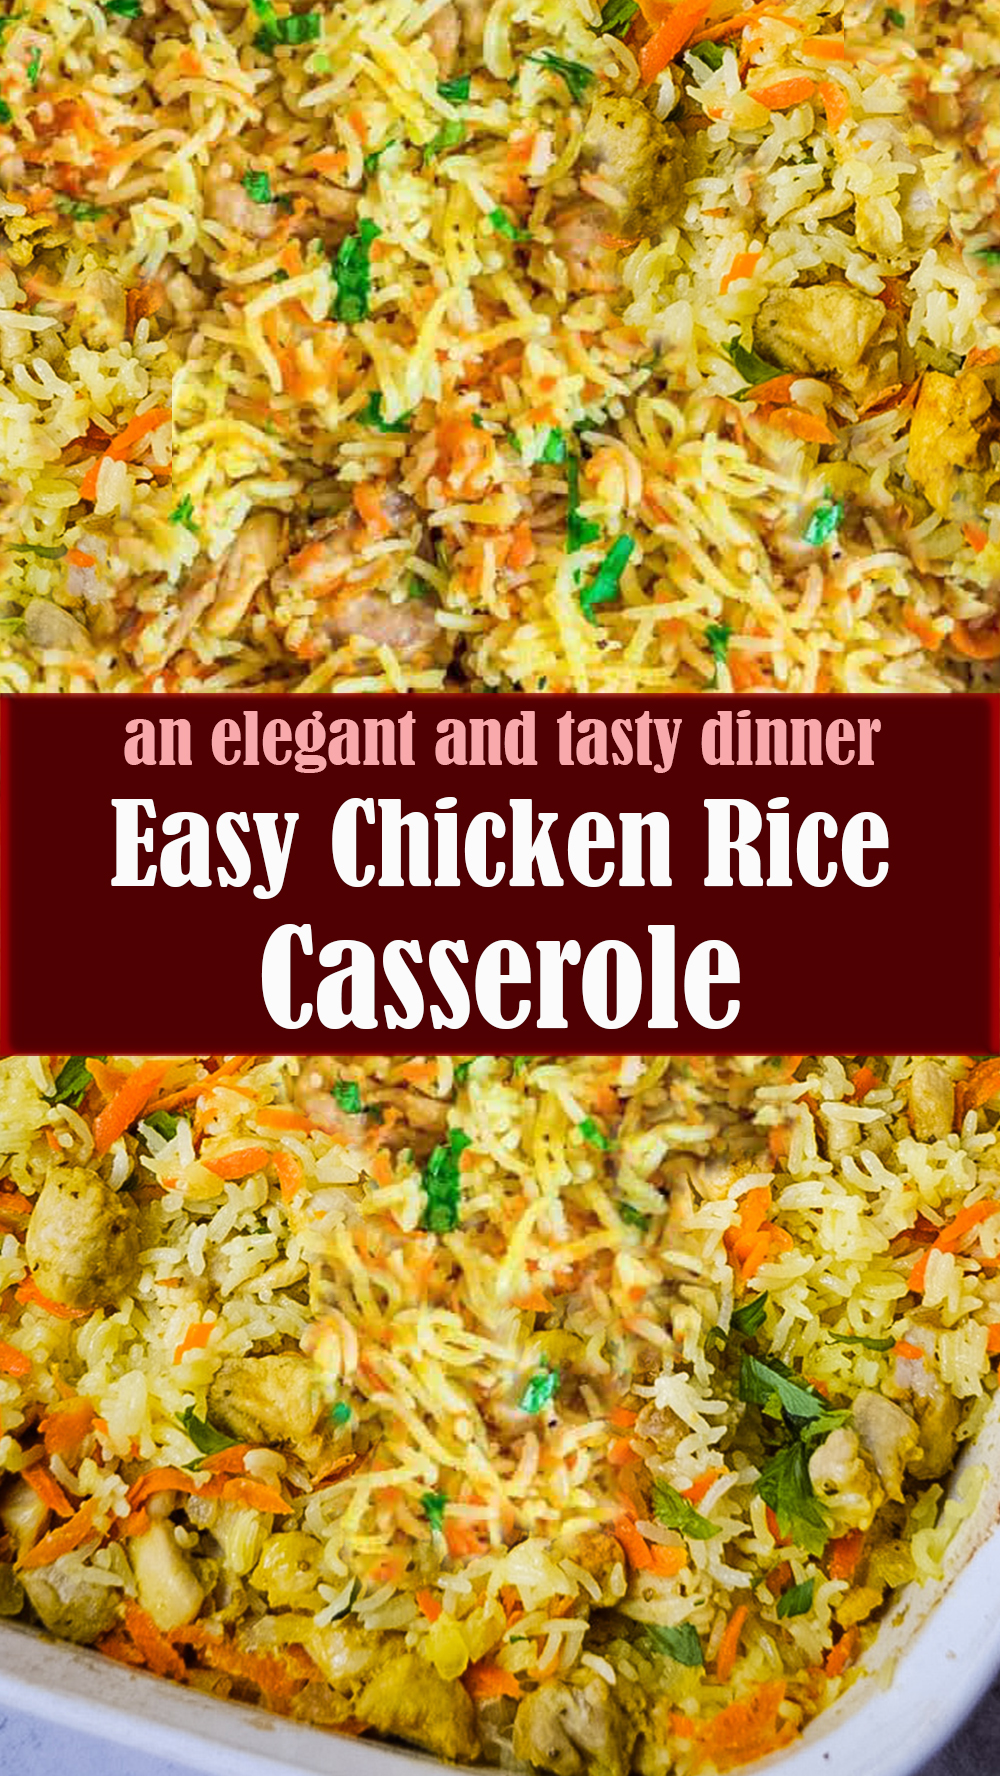 Easy Chicken Rice Casserole Recipe